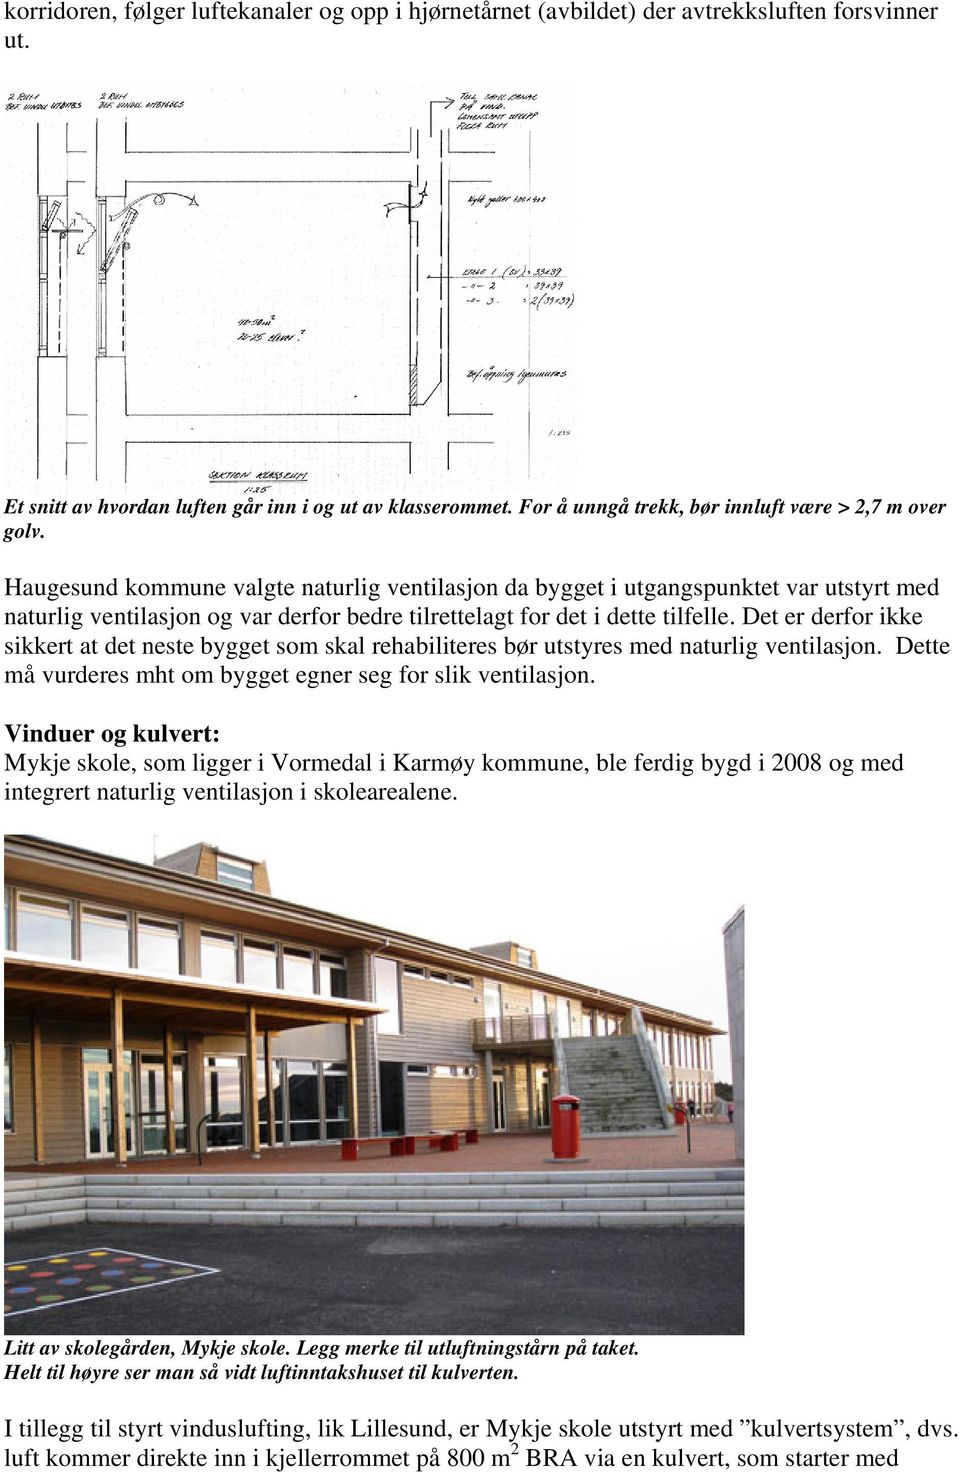 Haugesund kommune valgte naturlig ventilasjon da bygget i utgangspunktet var utstyrt med naturlig ventilasjon og var derfor bedre tilrettelagt for det i dette tilfelle.